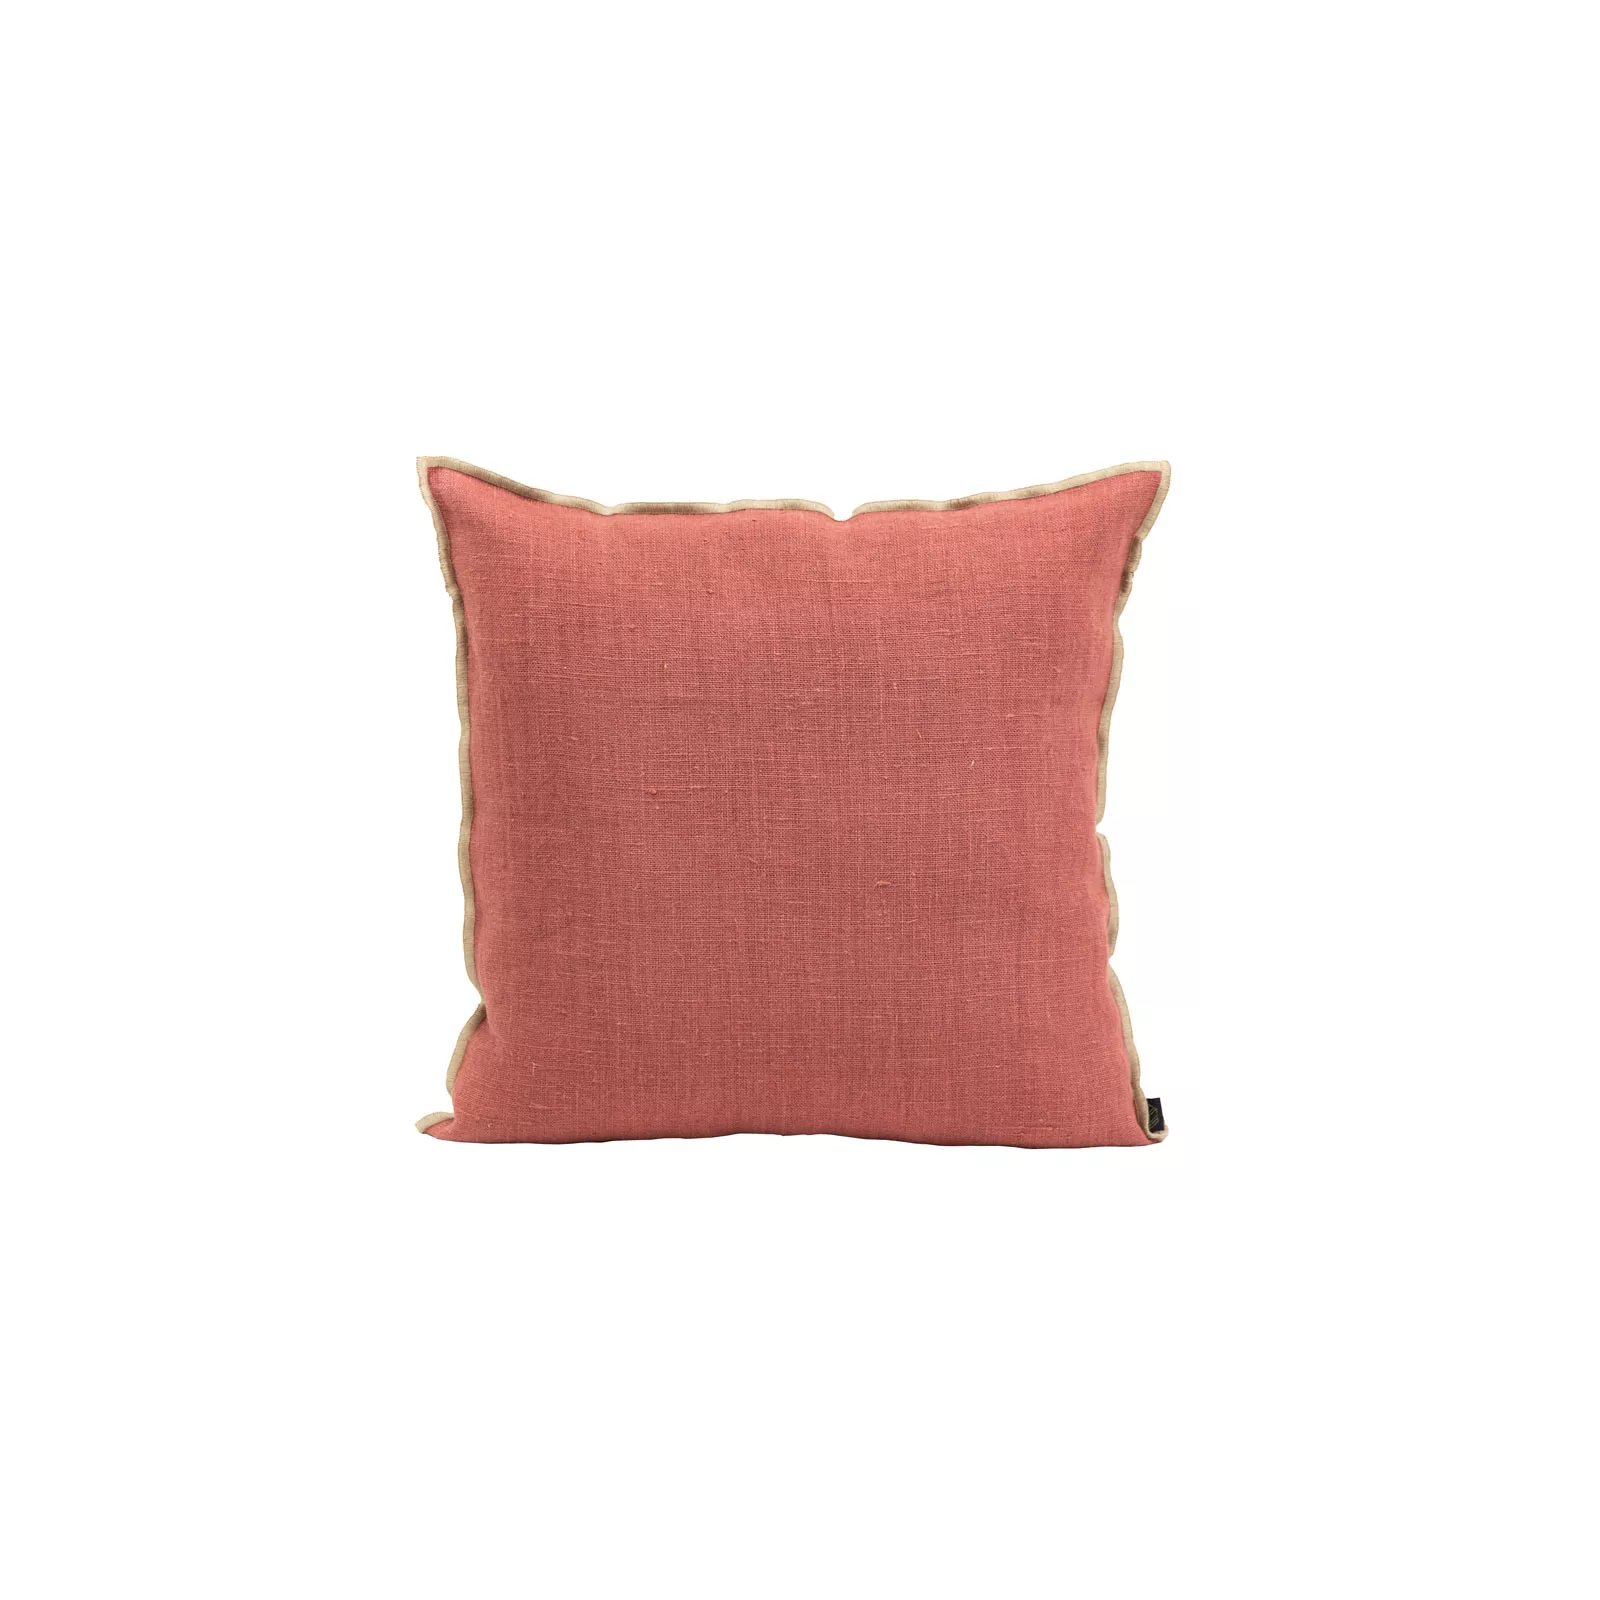 HOUSSE DE COUSSIN CHENNAI Dimension-18X18 Color-BOIS DE ROSE Composition-LIN - BOIS DE ROSE